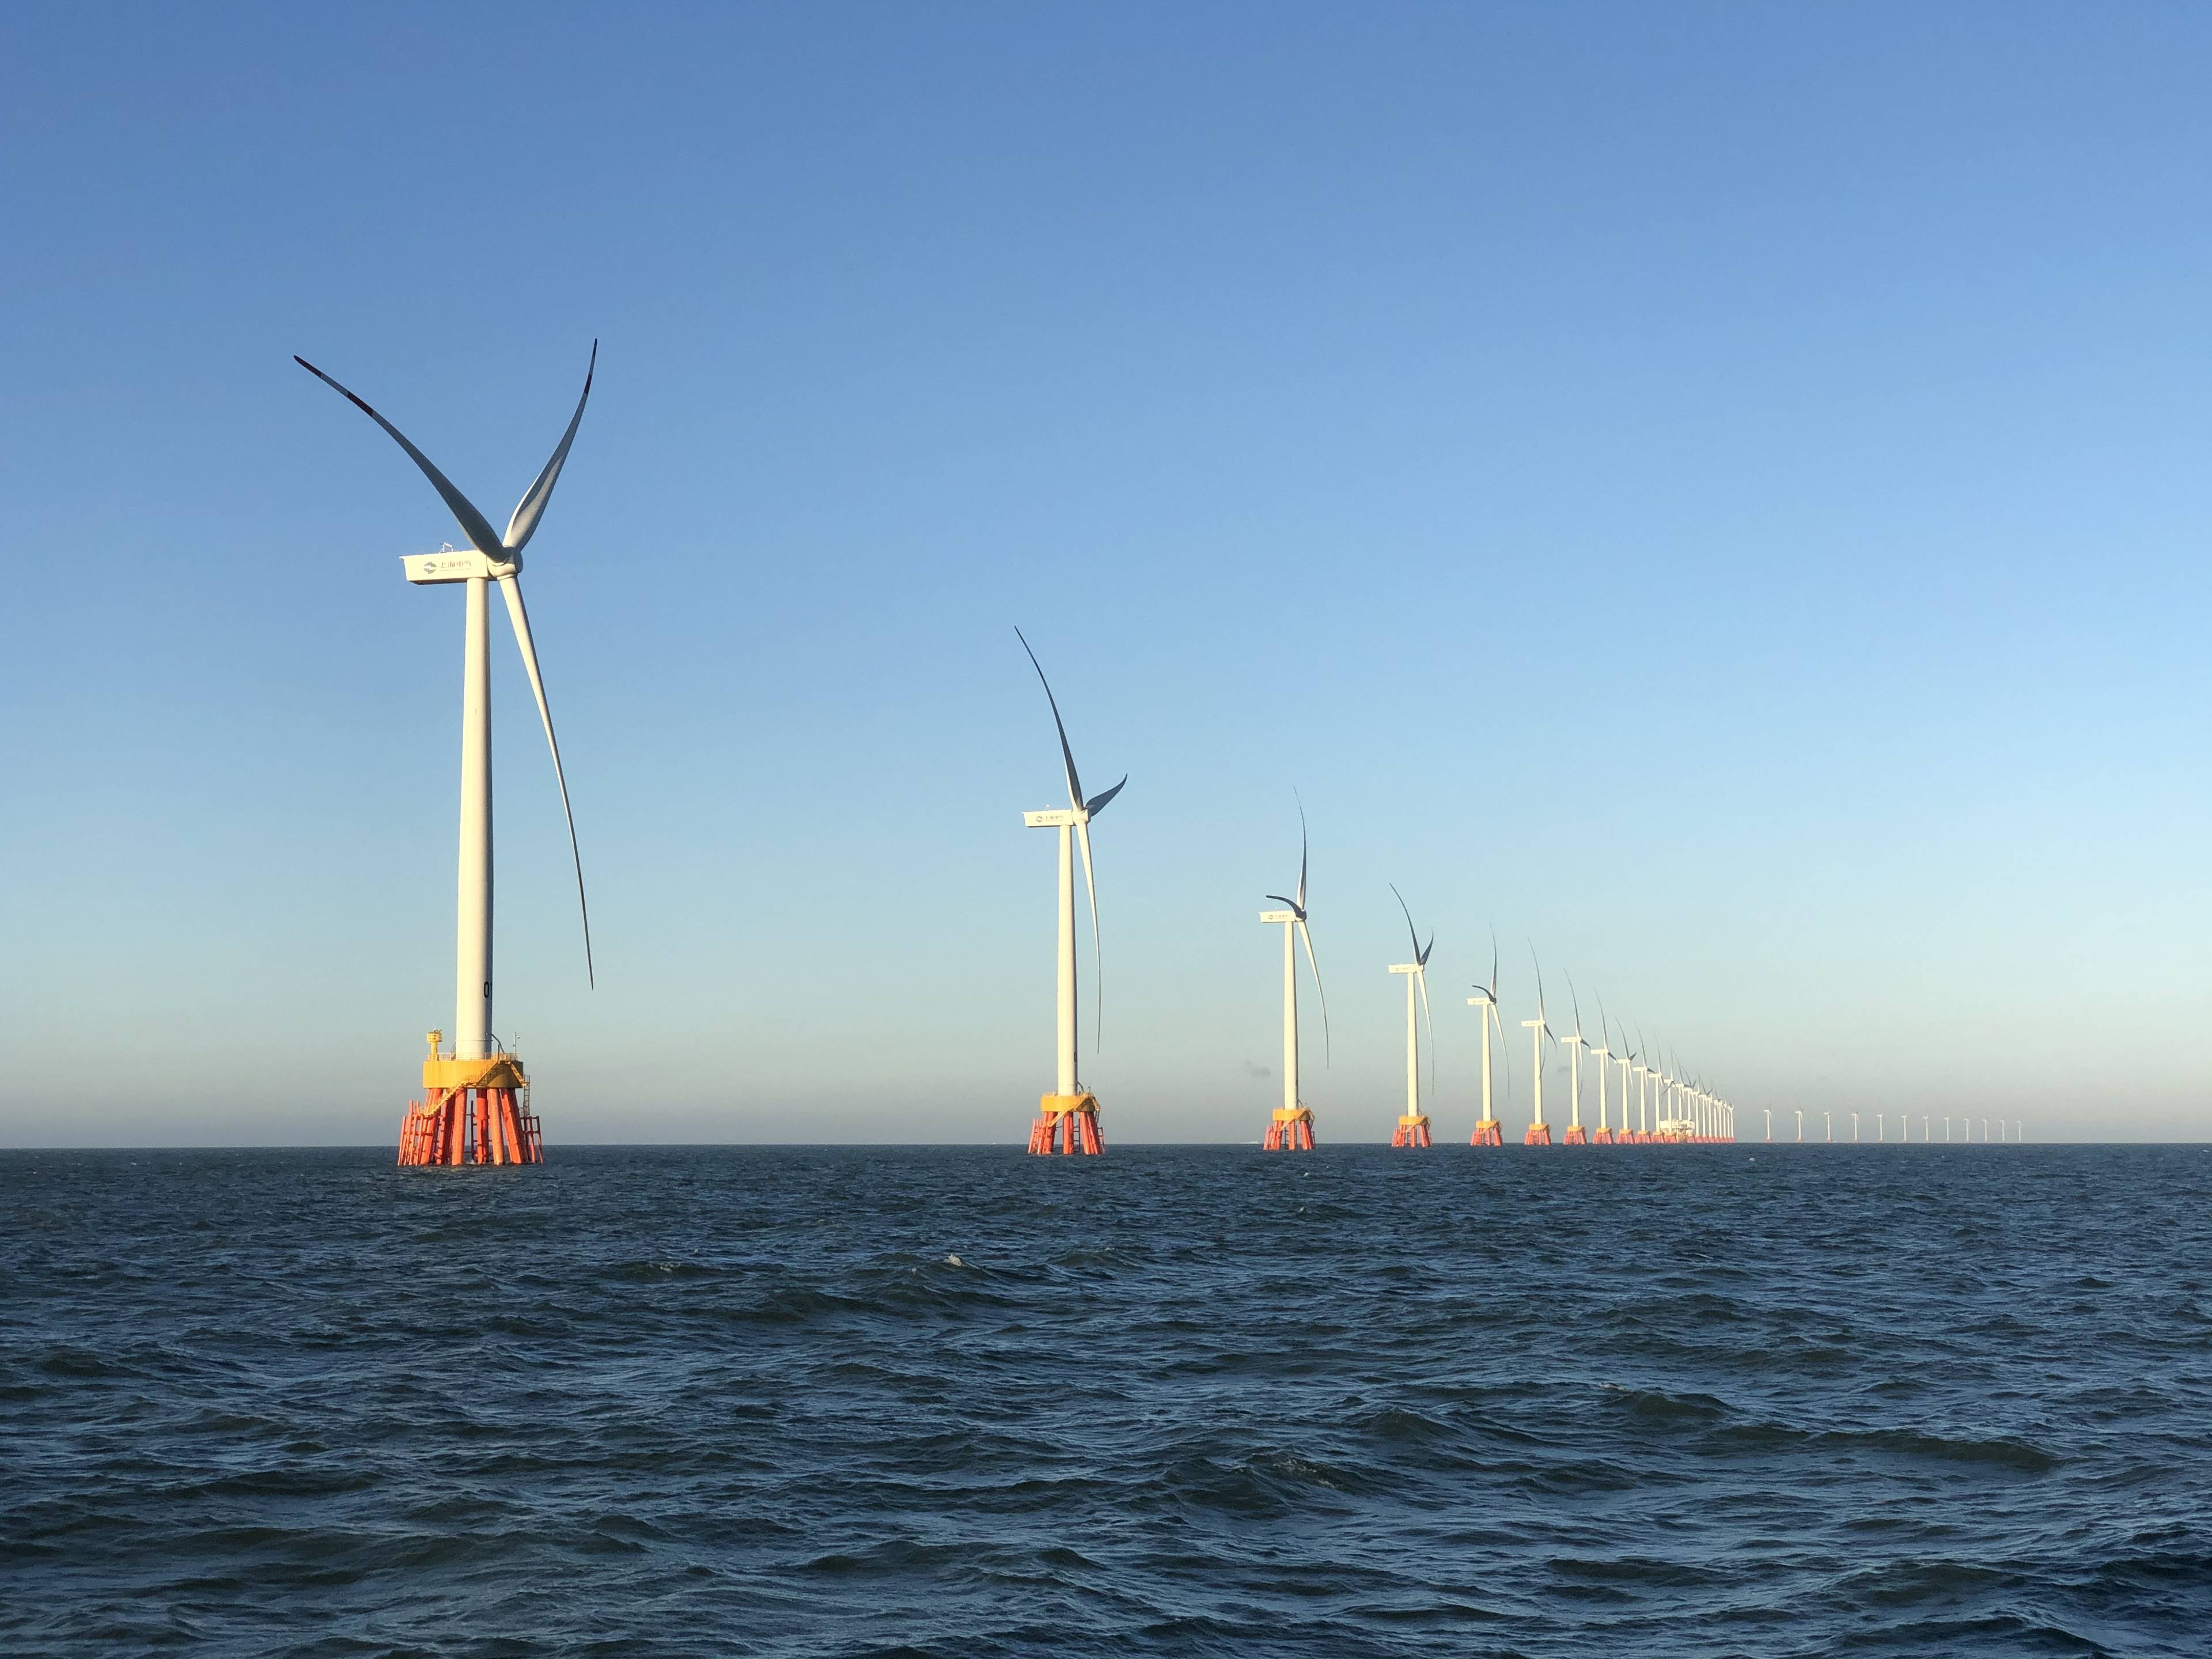 海面上风机桨叶缓缓转动电气风电董事长缪骏风力发电或成未来主力能源